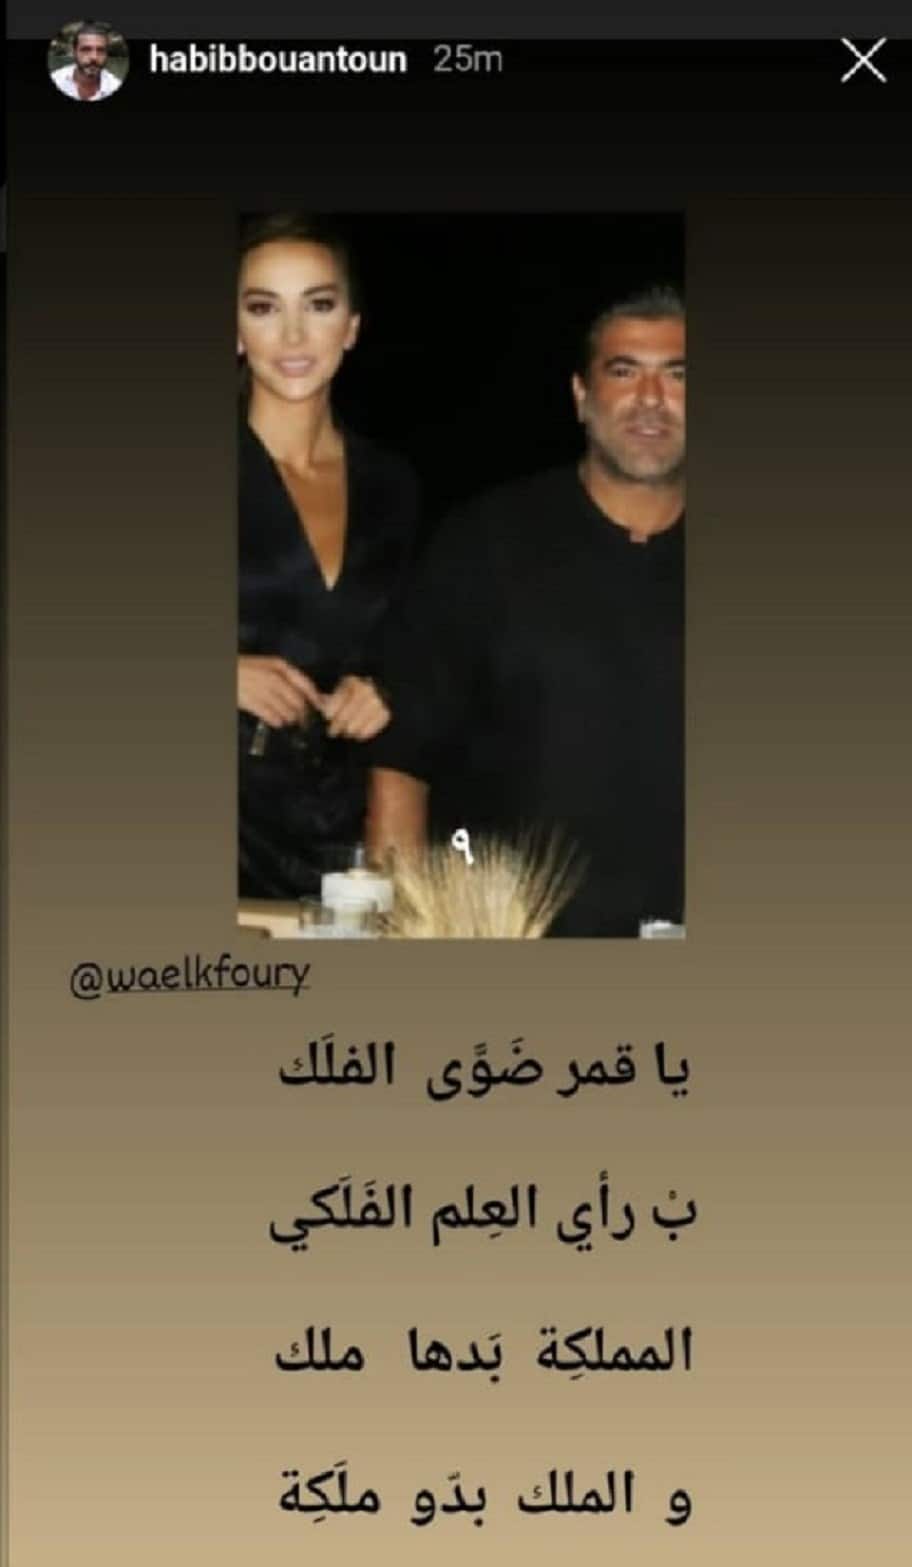 O matrimonio de Wael Kfoury, e quen é Shana Abboud, a muller que escolleu o seu corazón?